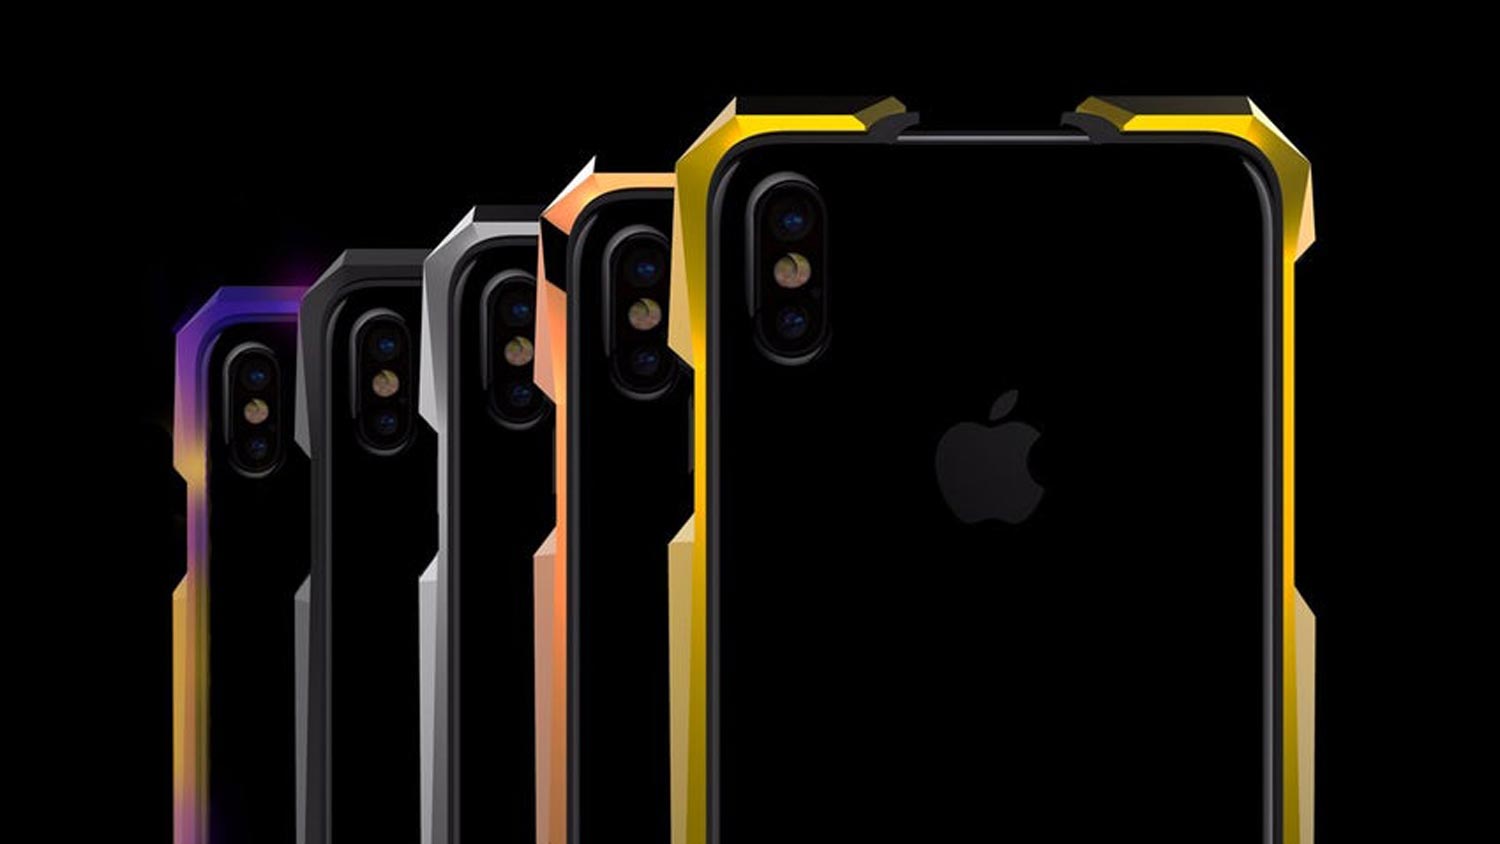 Advent – Kerangka iPhone X Yang Diperbuat Daripada Titanium